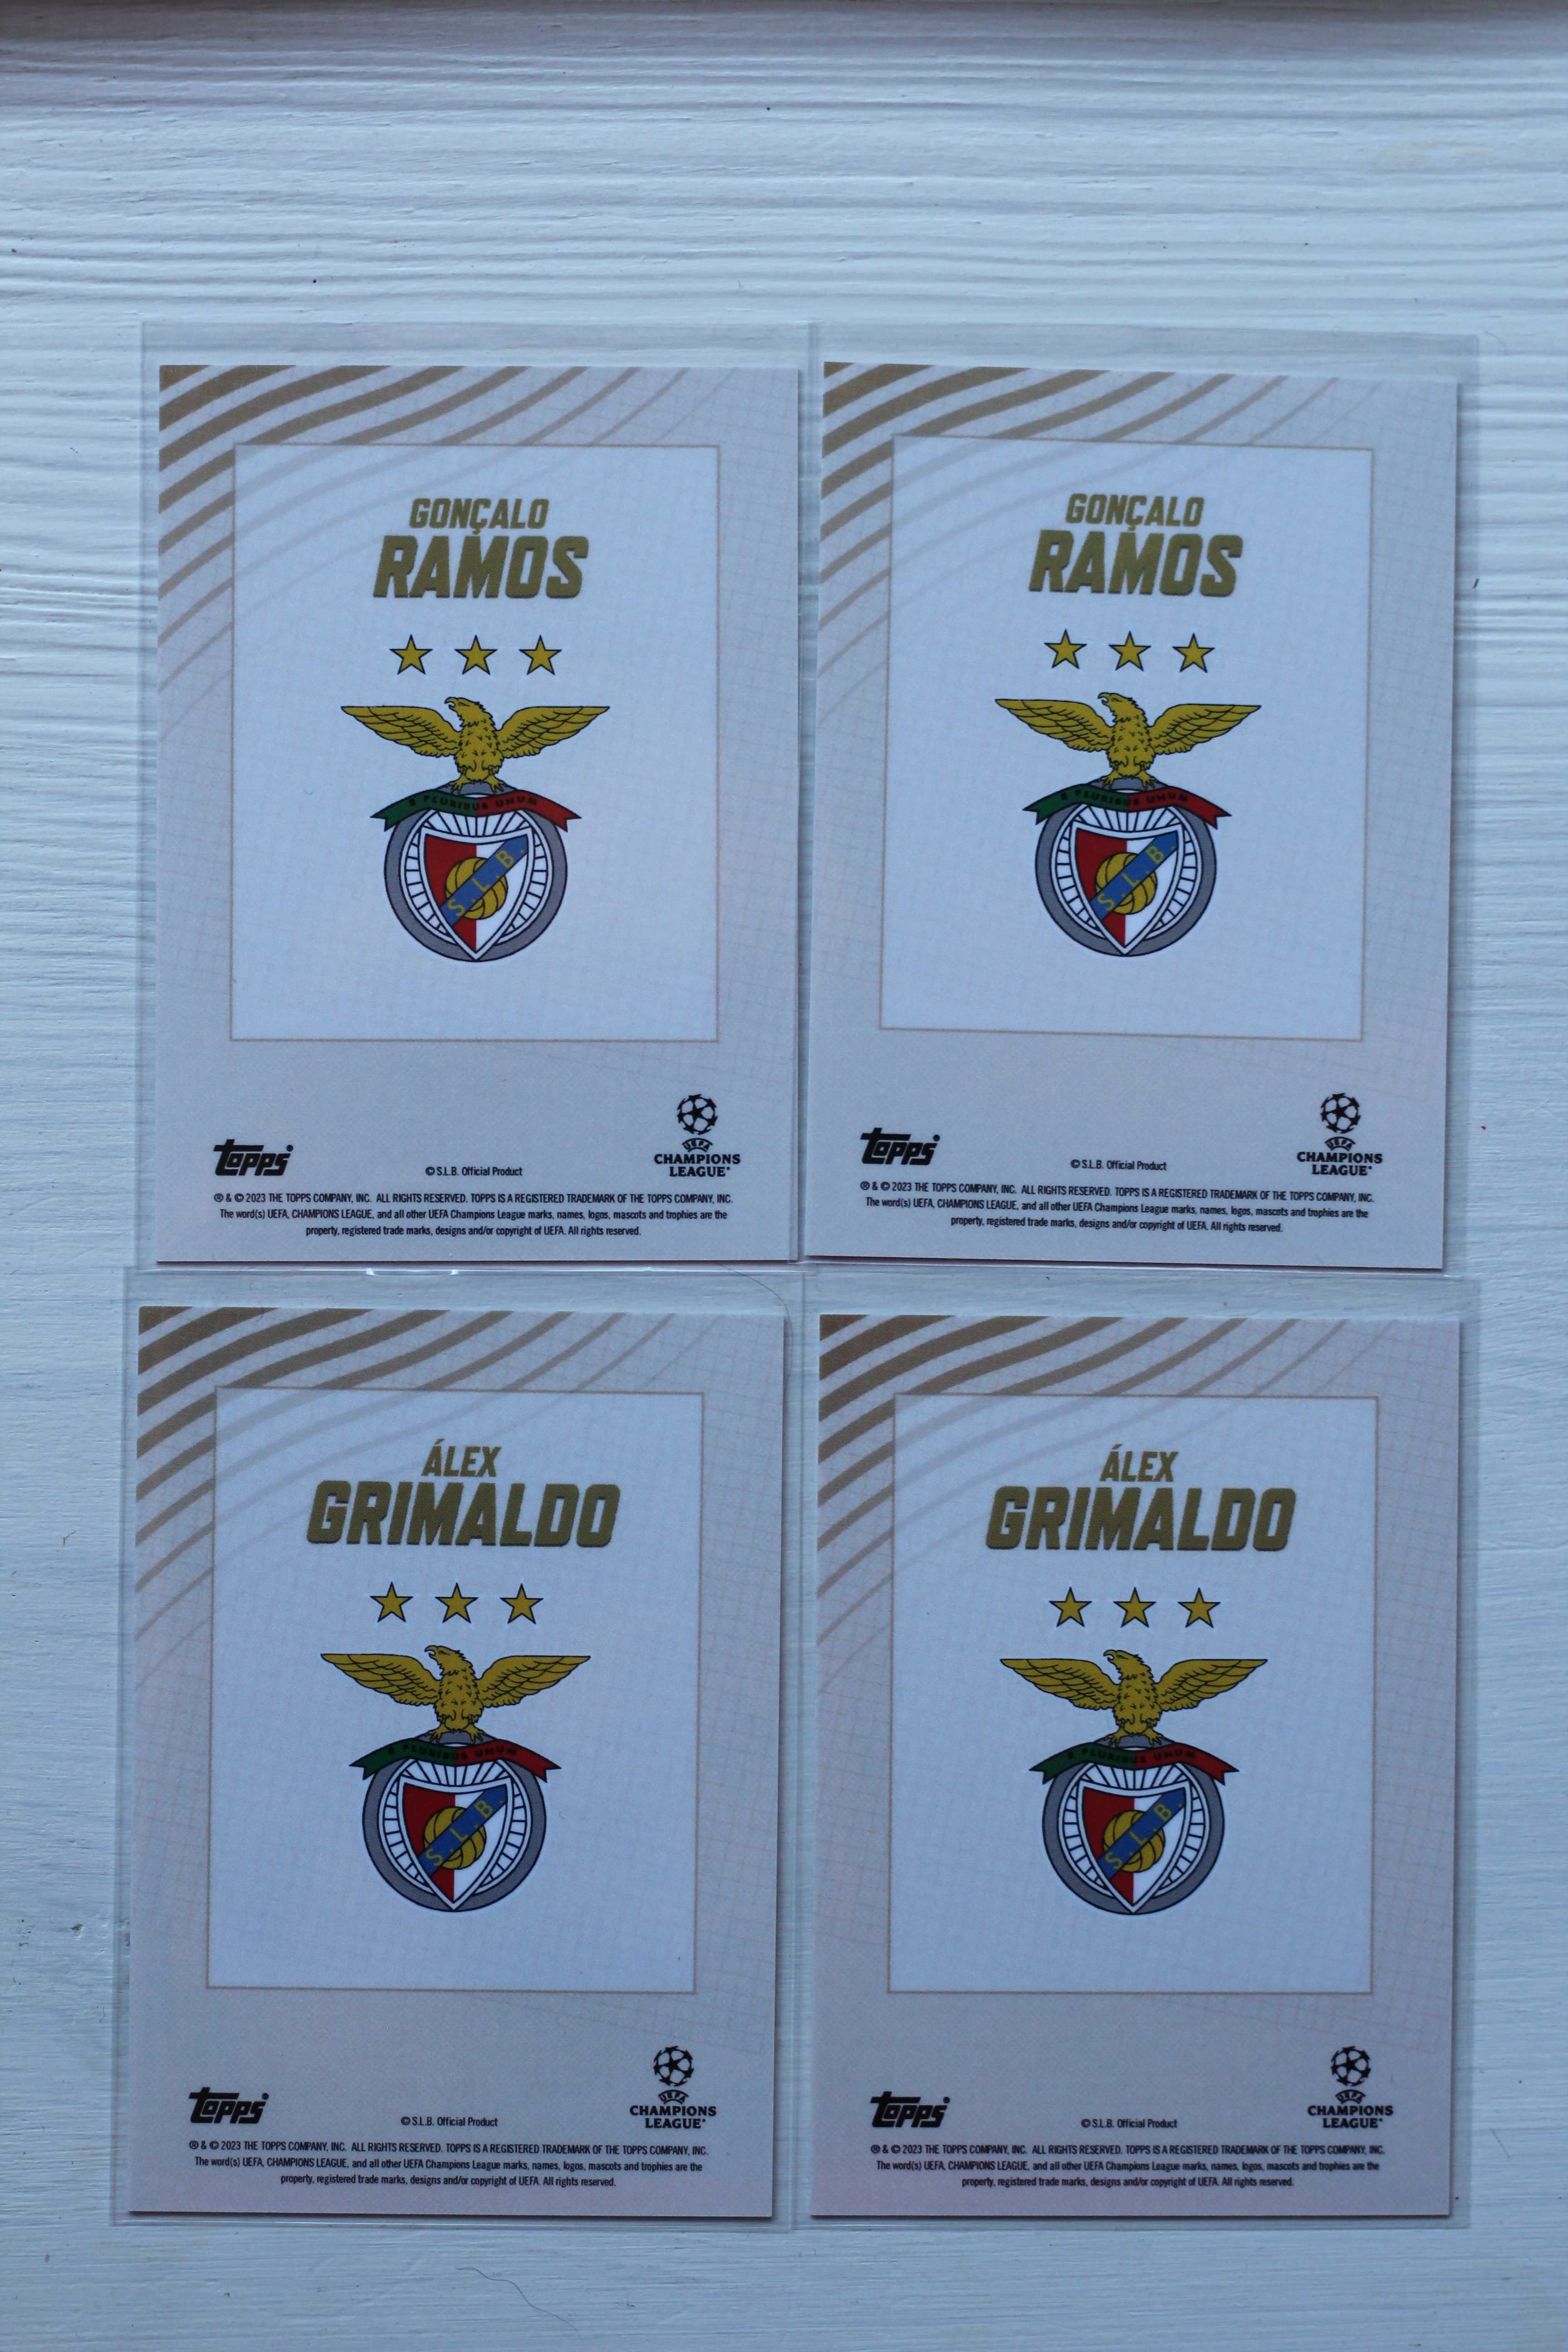 Cartas SL Benfica - Topps Gold - Gonçalo Ramos e Alex Grimaldo